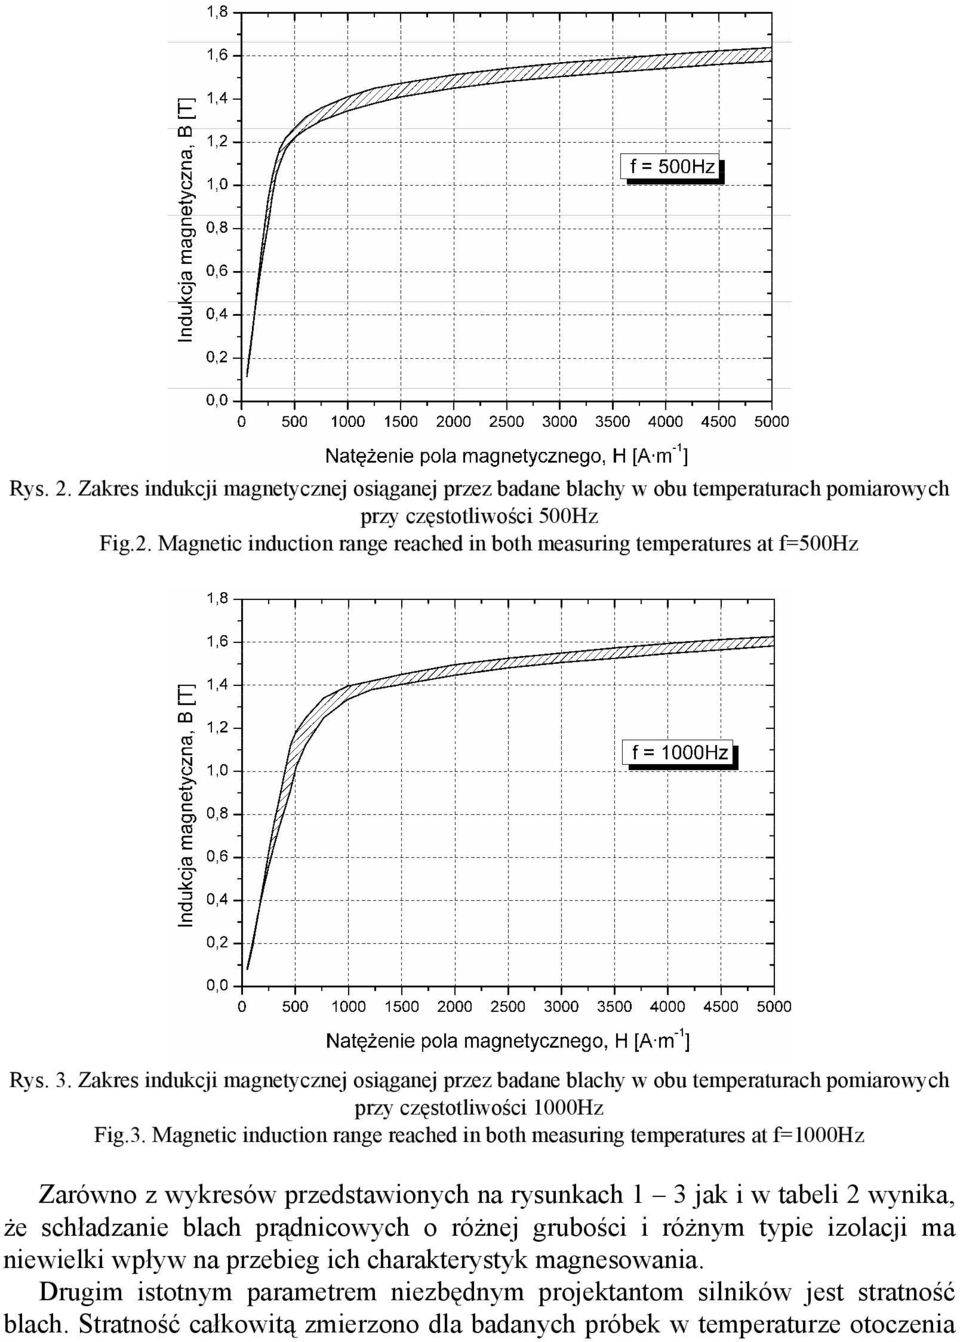 f=1000hz Zarówno z wykresów przedstawionych na rysunkach 1 3 jak i w tabeli 2 wynika, że schładzanie blach prądnicowych o różnej grubości i różnym typie izolacji ma niewielki wpływ na przebieg ich